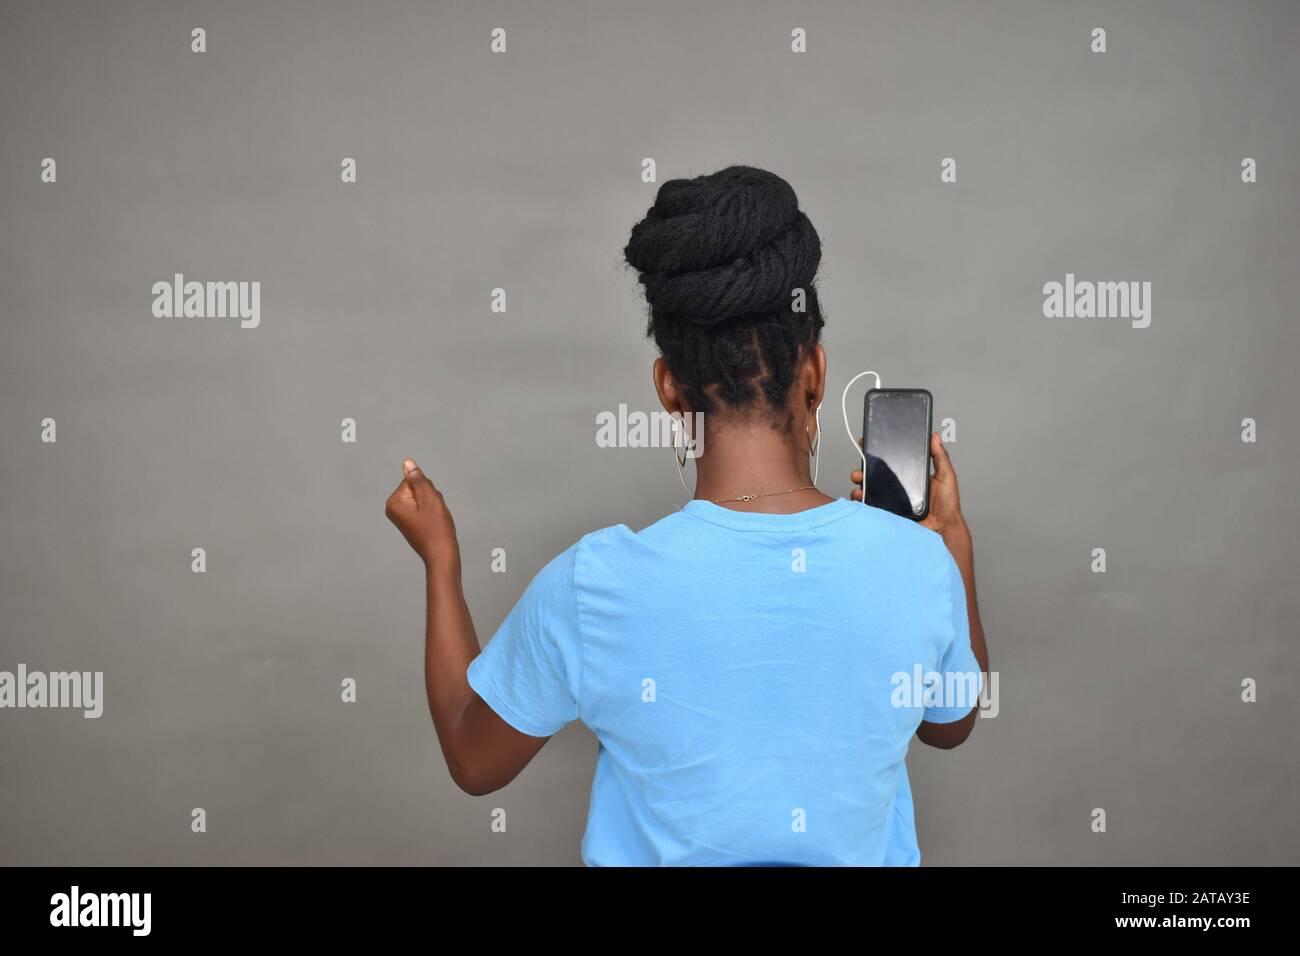 belle femme africaine à écouter de la musique et aussi à regarder du contenu sur son téléphone mobile se sentant excitée, vue arrière Banque D'Images